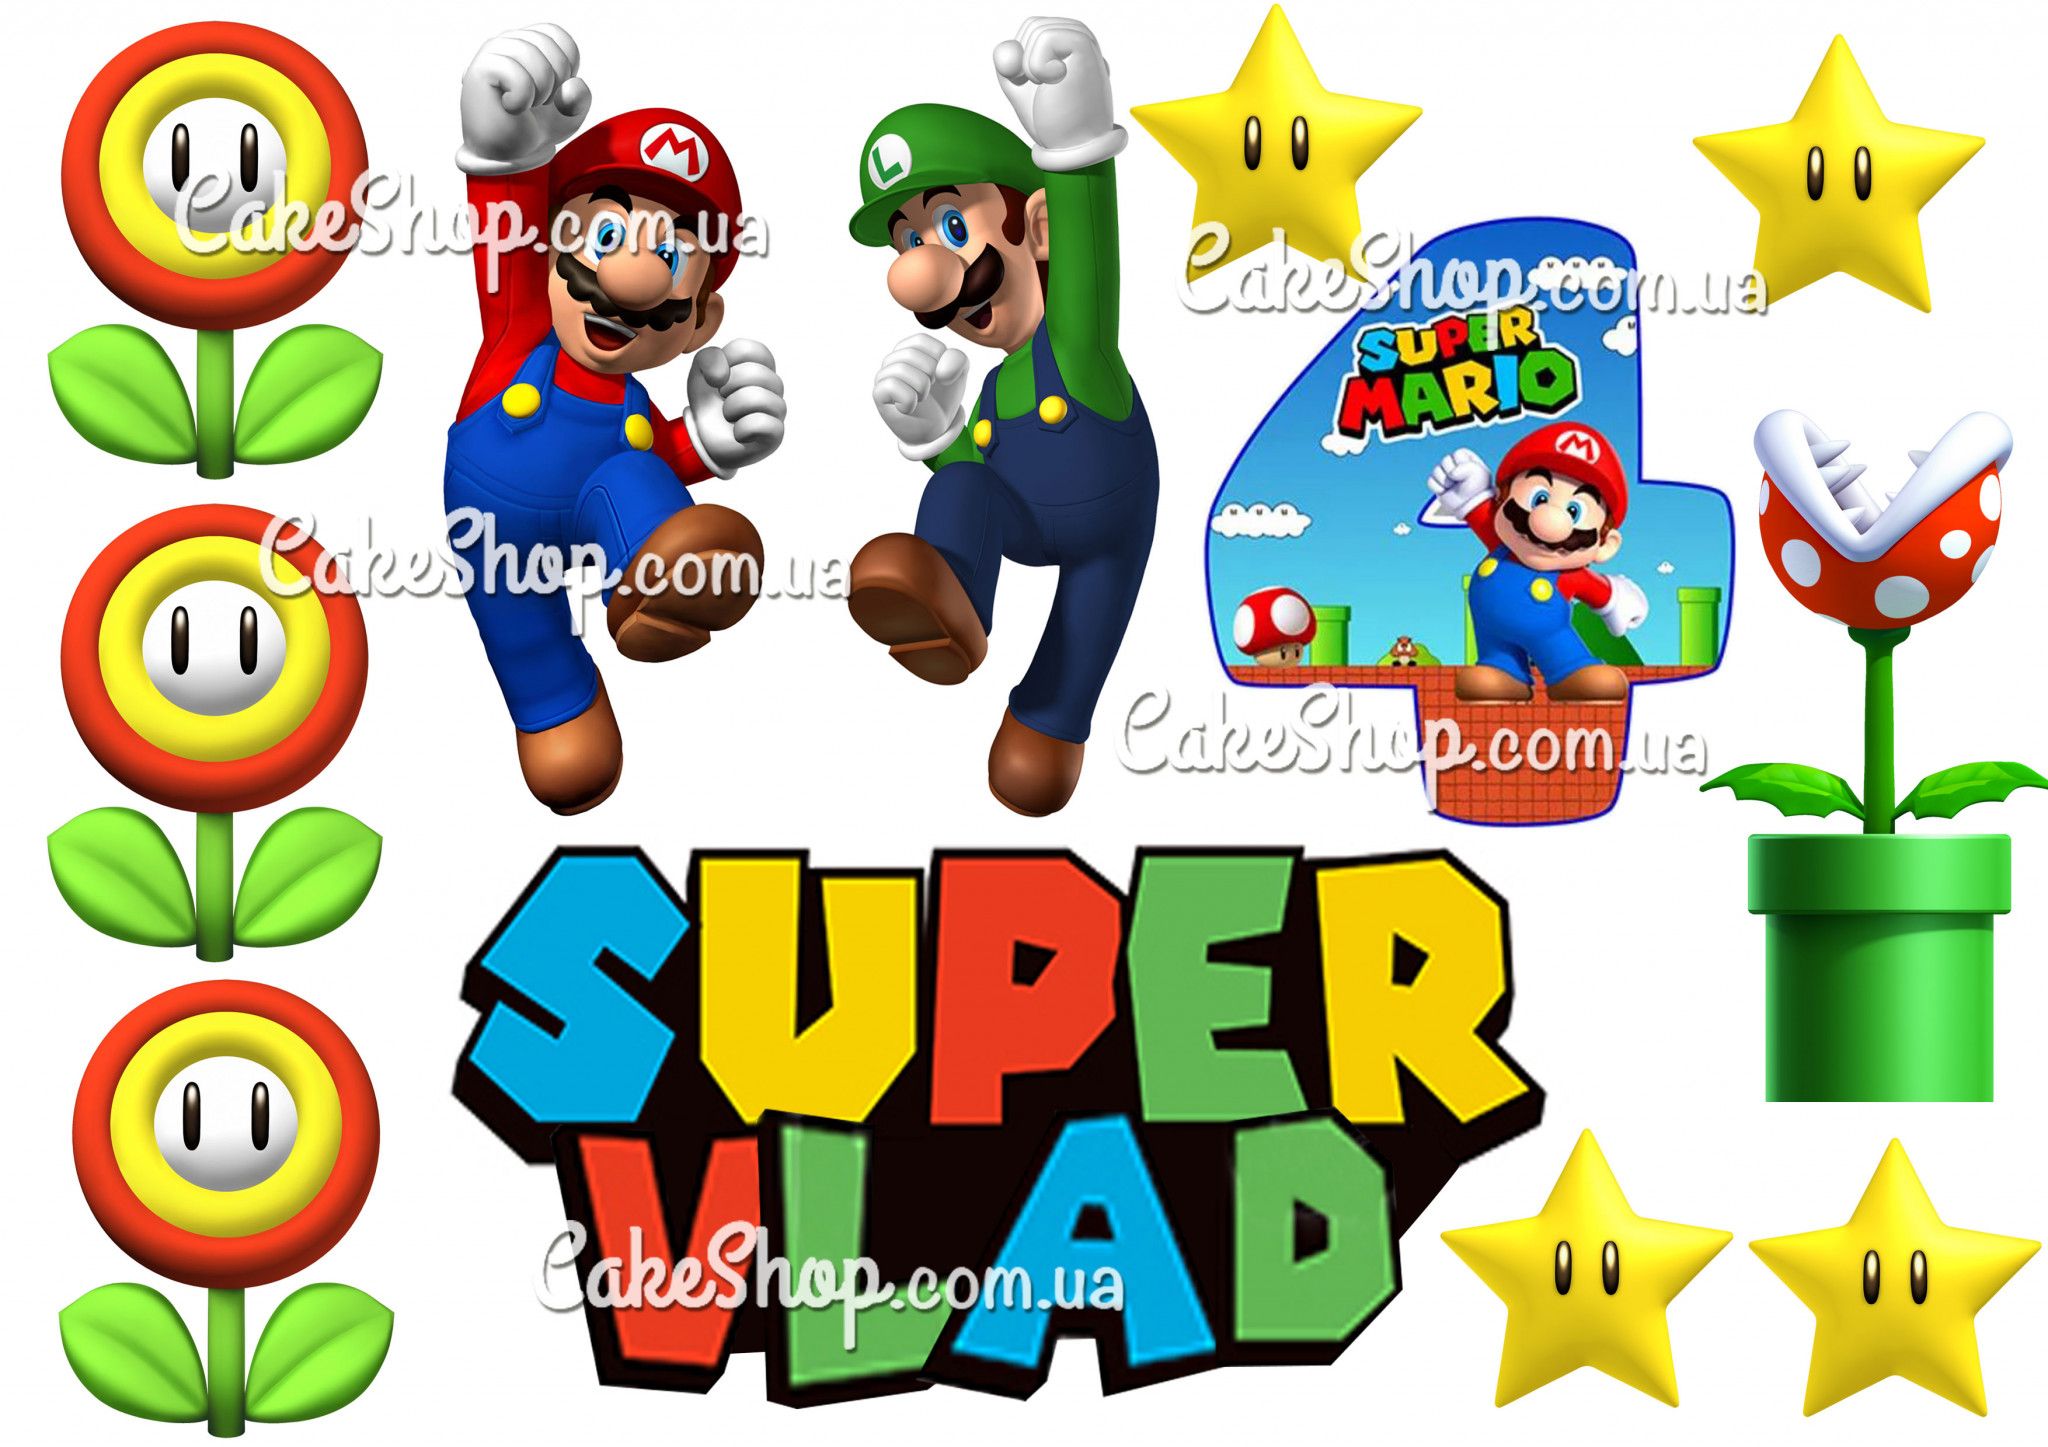 ⋗ Вафельная картинка Супер Марио 3 купить в Украине ➛ CakeShop.com.ua, фото